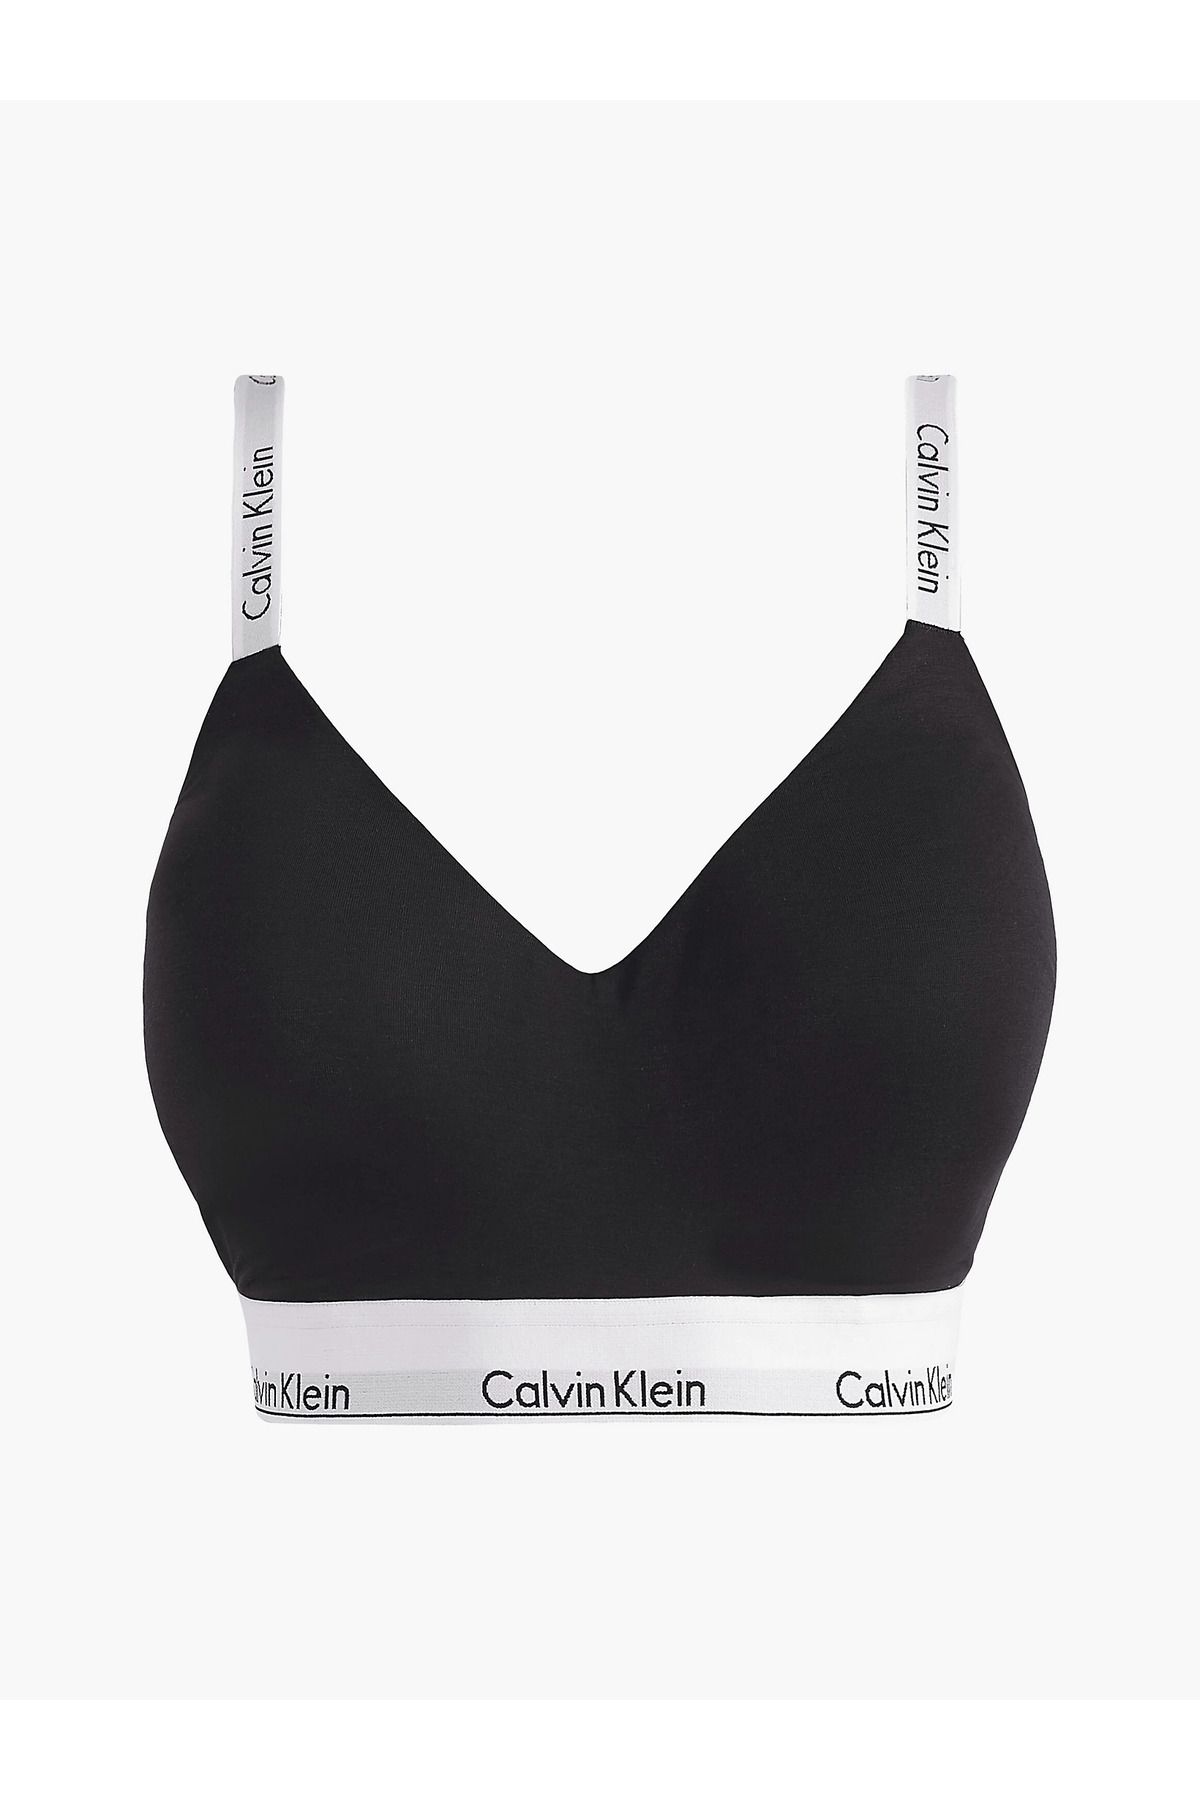 Calvin Klein Kadın Imzalı Elastik Bantlı Siyah Spor Sütyeni 000qf7060e-ub1